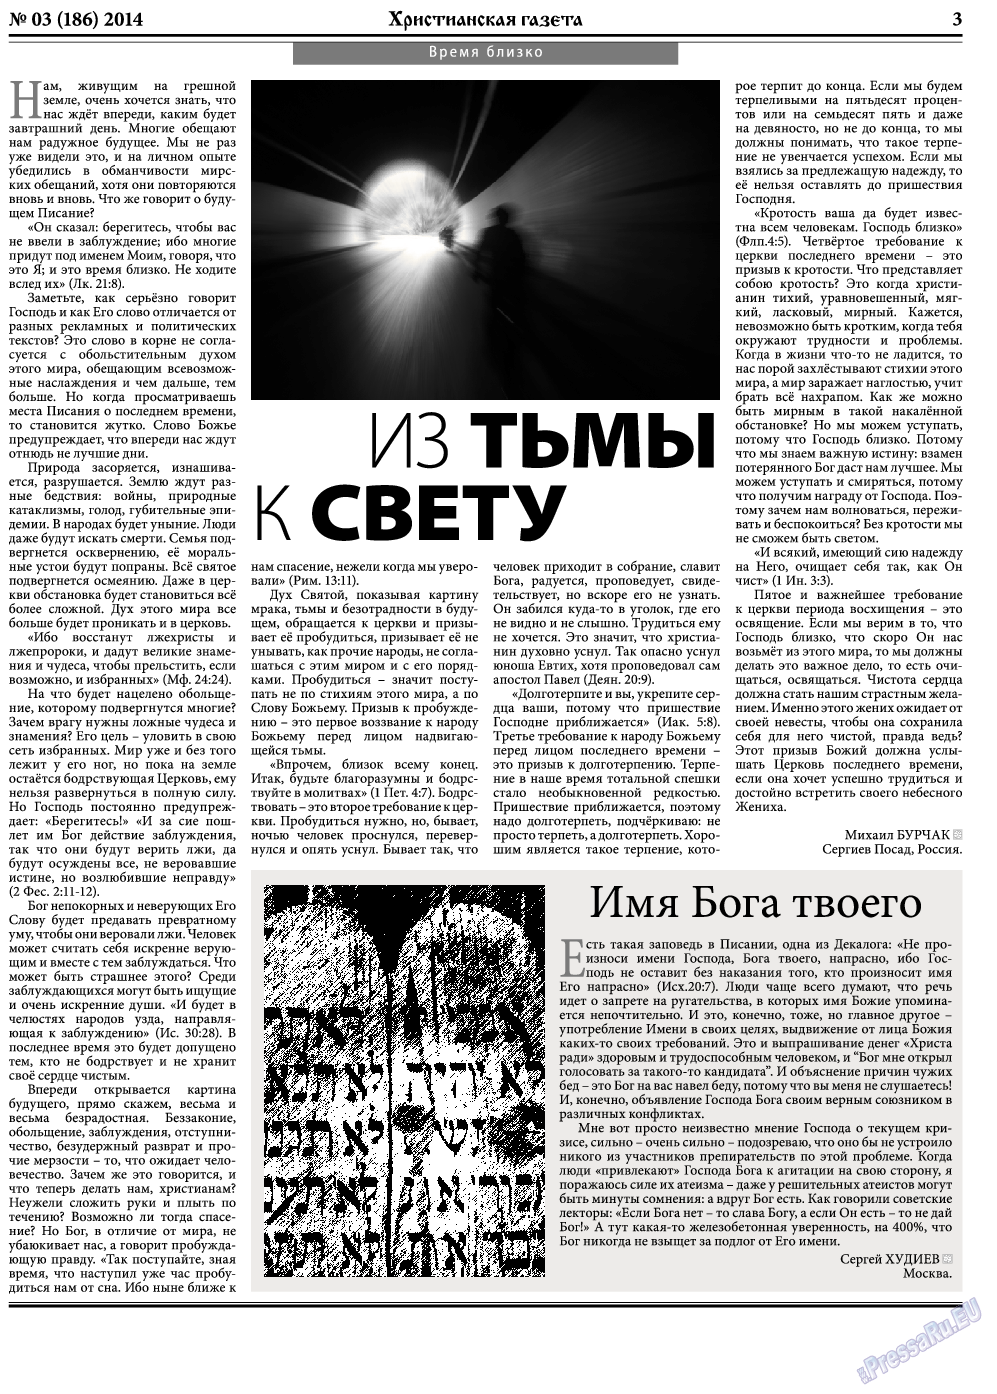 Христианская газета, газета. 2014 №3 стр.3